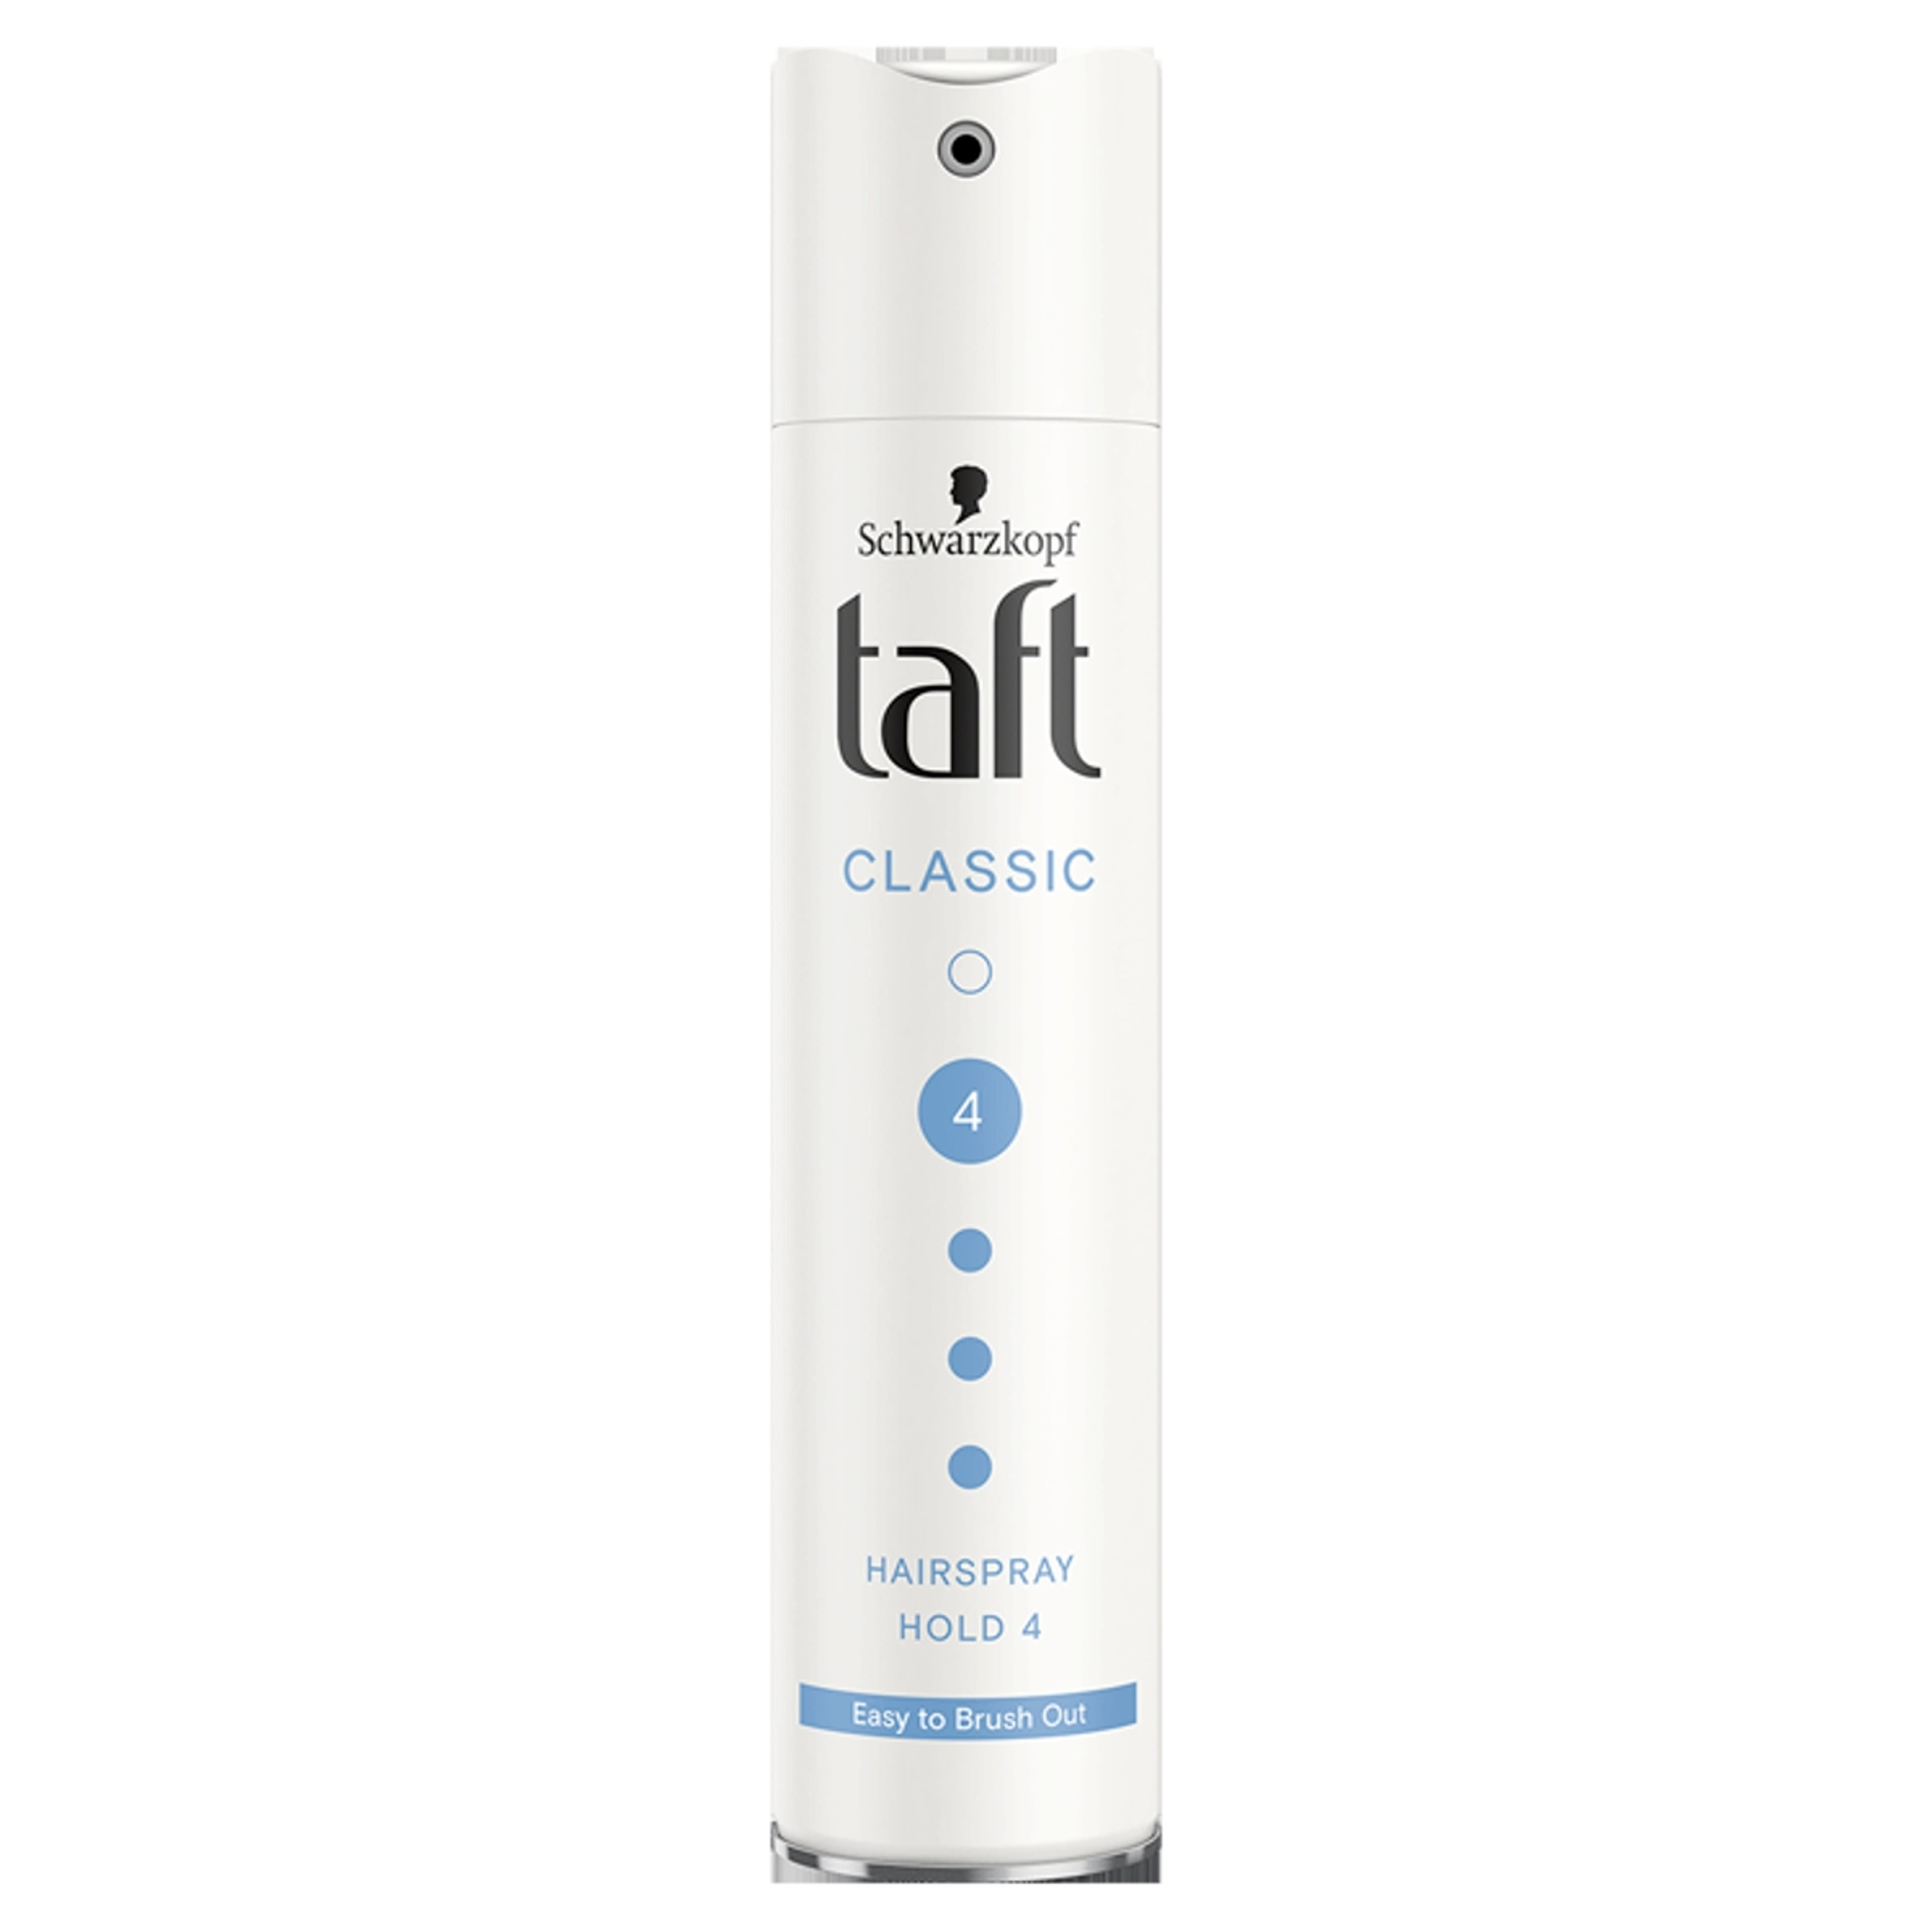 Taft 3 Wetter Classic Extra Erős hajlakk - 250 ml-1